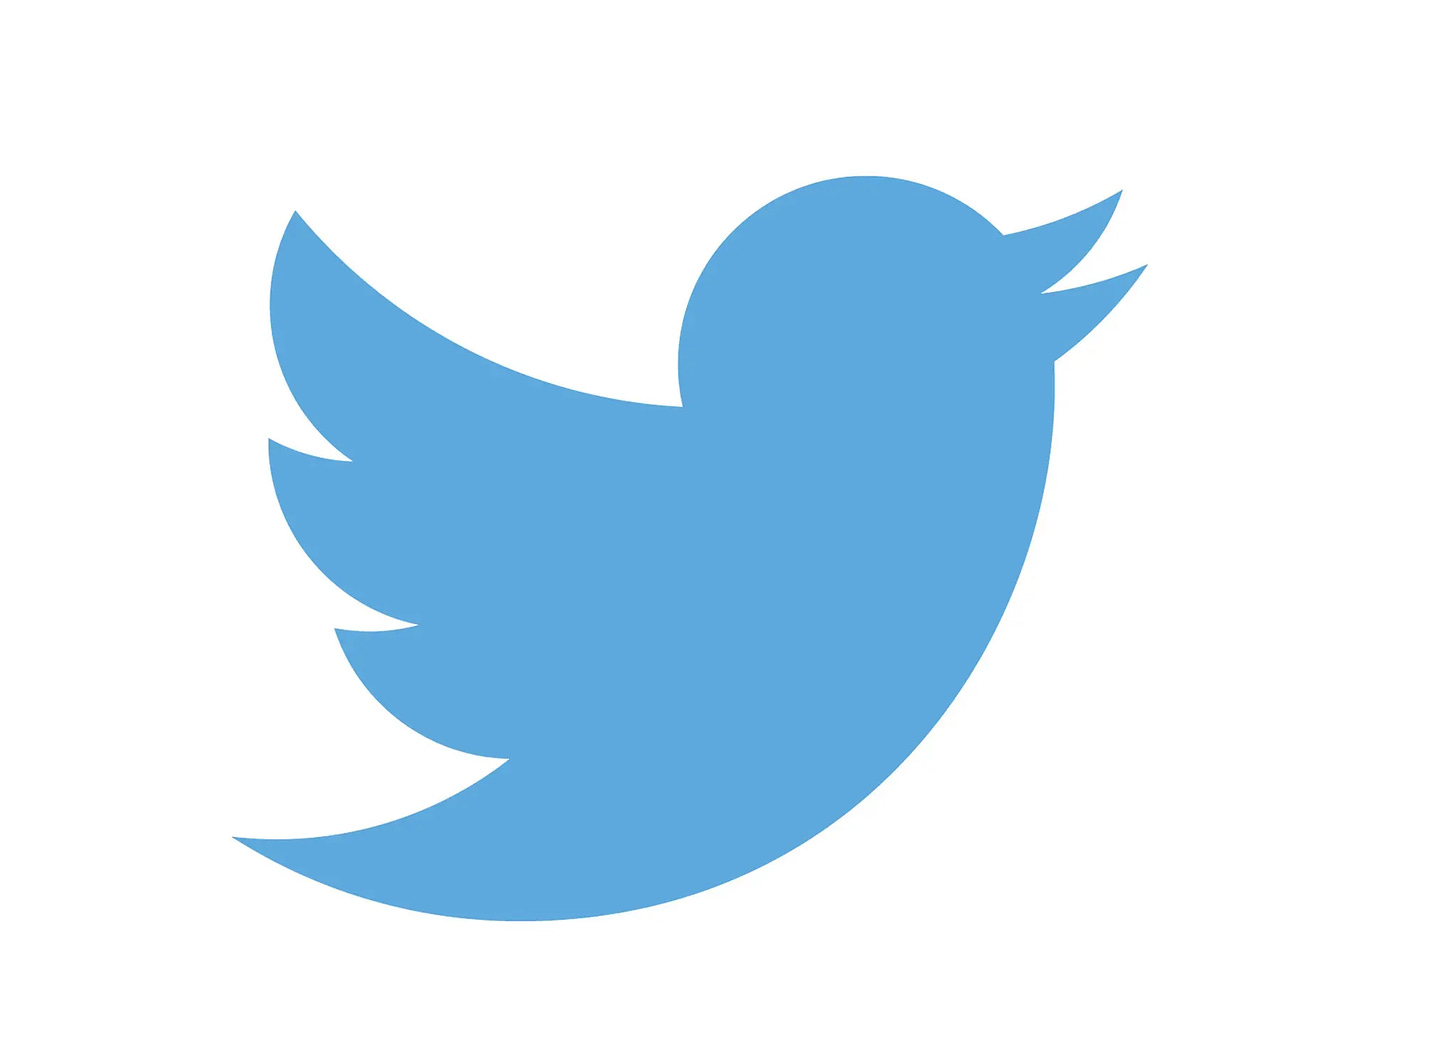 the twitter logo of a blue bird